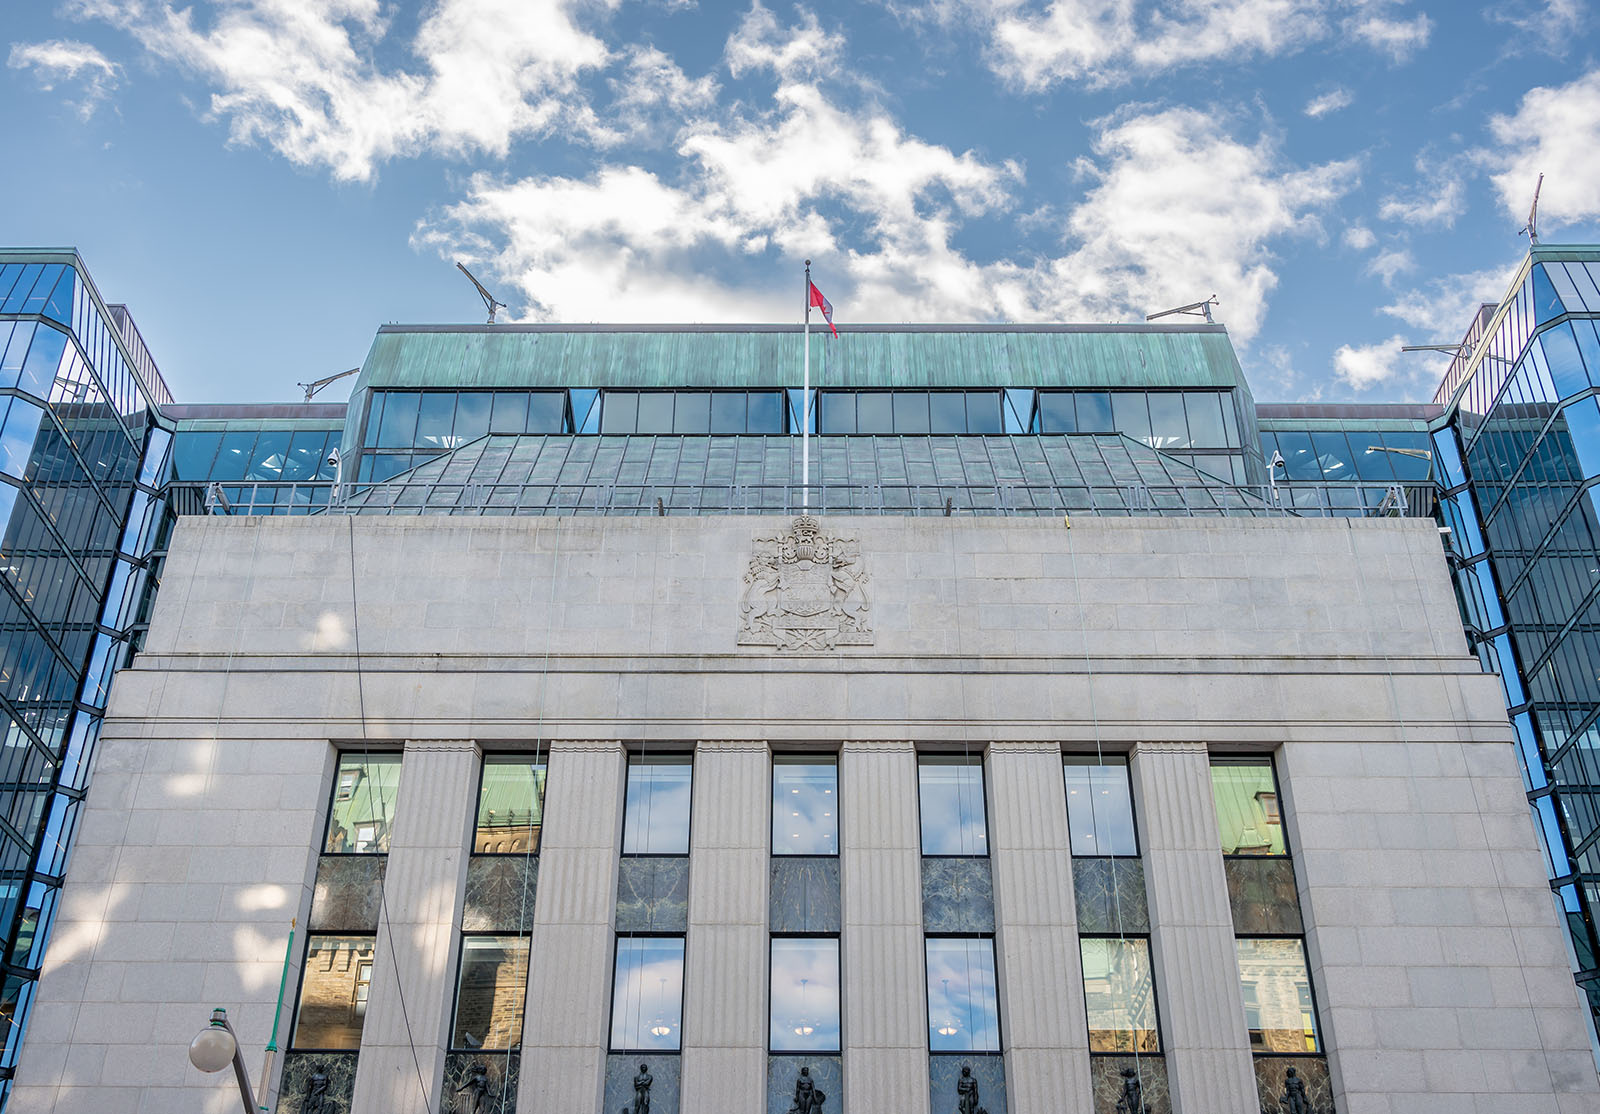 Façade du bâtiment de la Banque du Canada sur la colline du Parlement canadien par une belle journée.